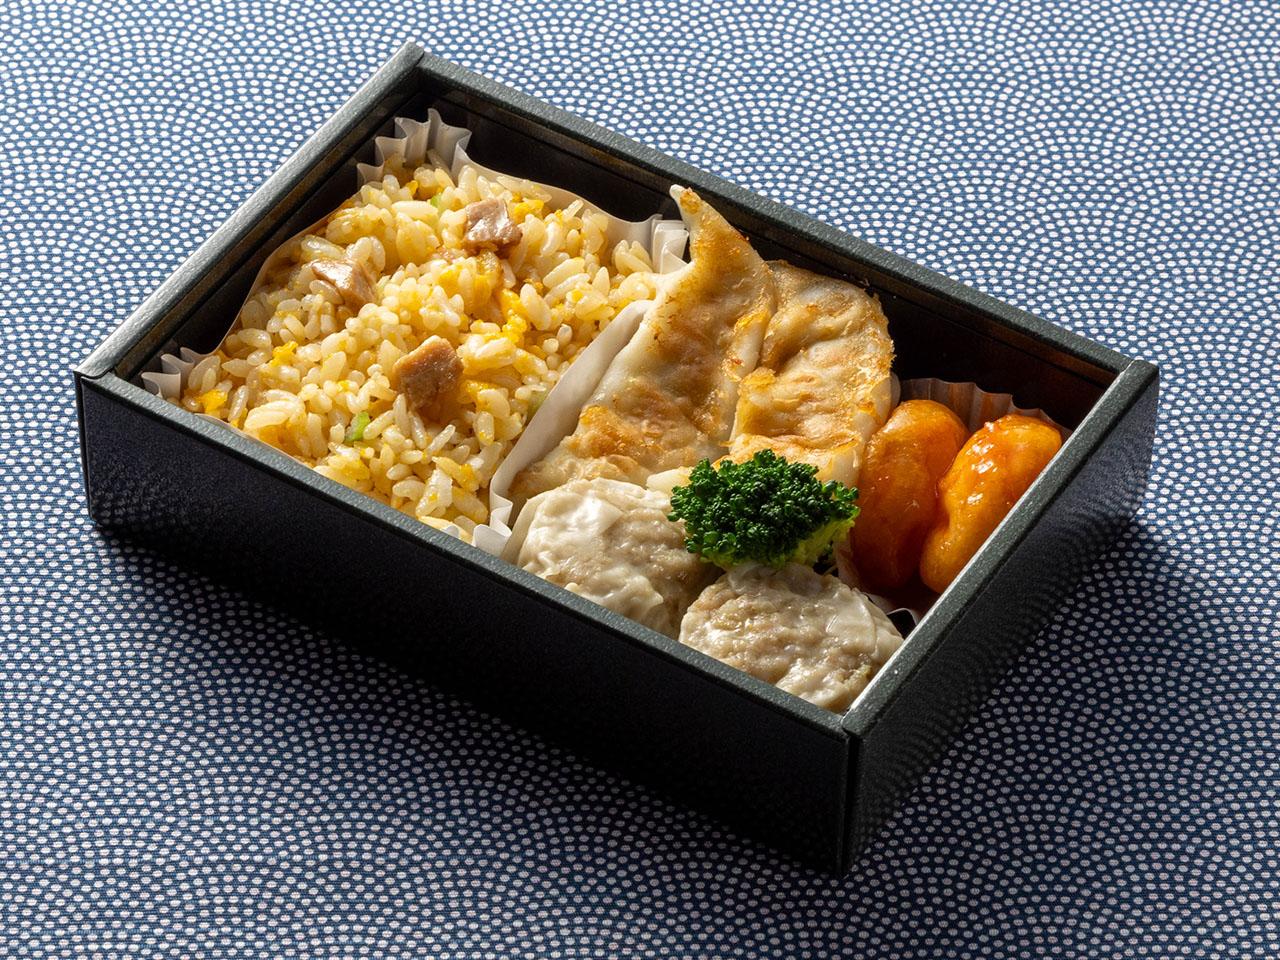 "นี่คือรูปภาพอาหารบนเครื่อง มาจิจูกะเซ็ต"